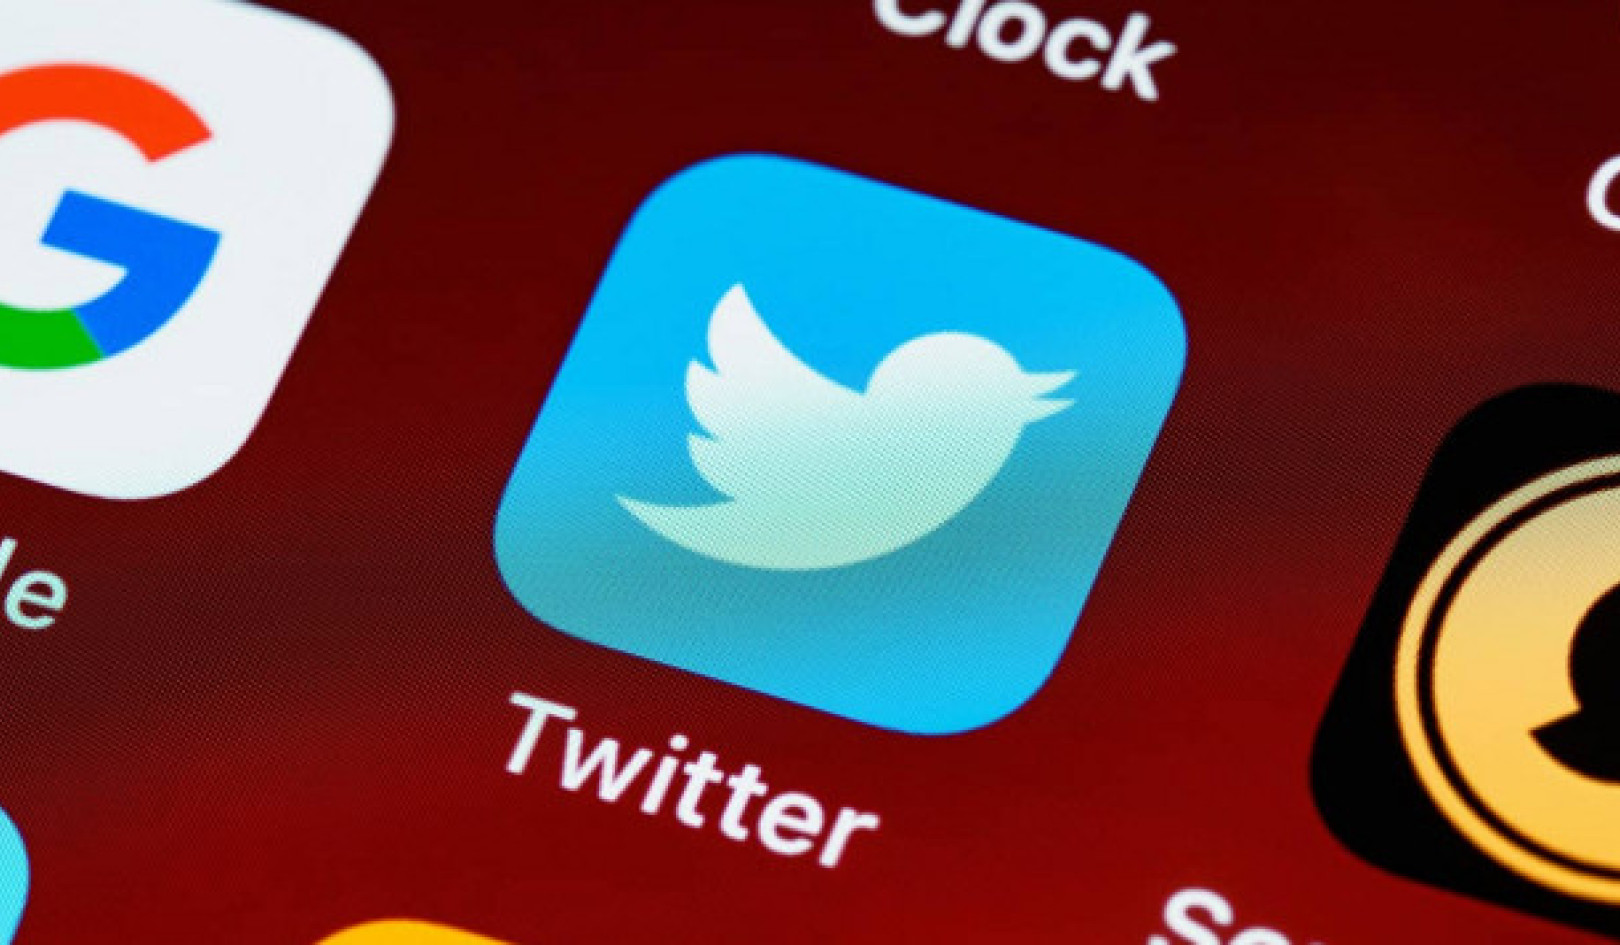 Πολιτικοί ηγέτες στο Twitter: Αντίθετες τάσεις σε αναξιόπιστο περιεχόμενο